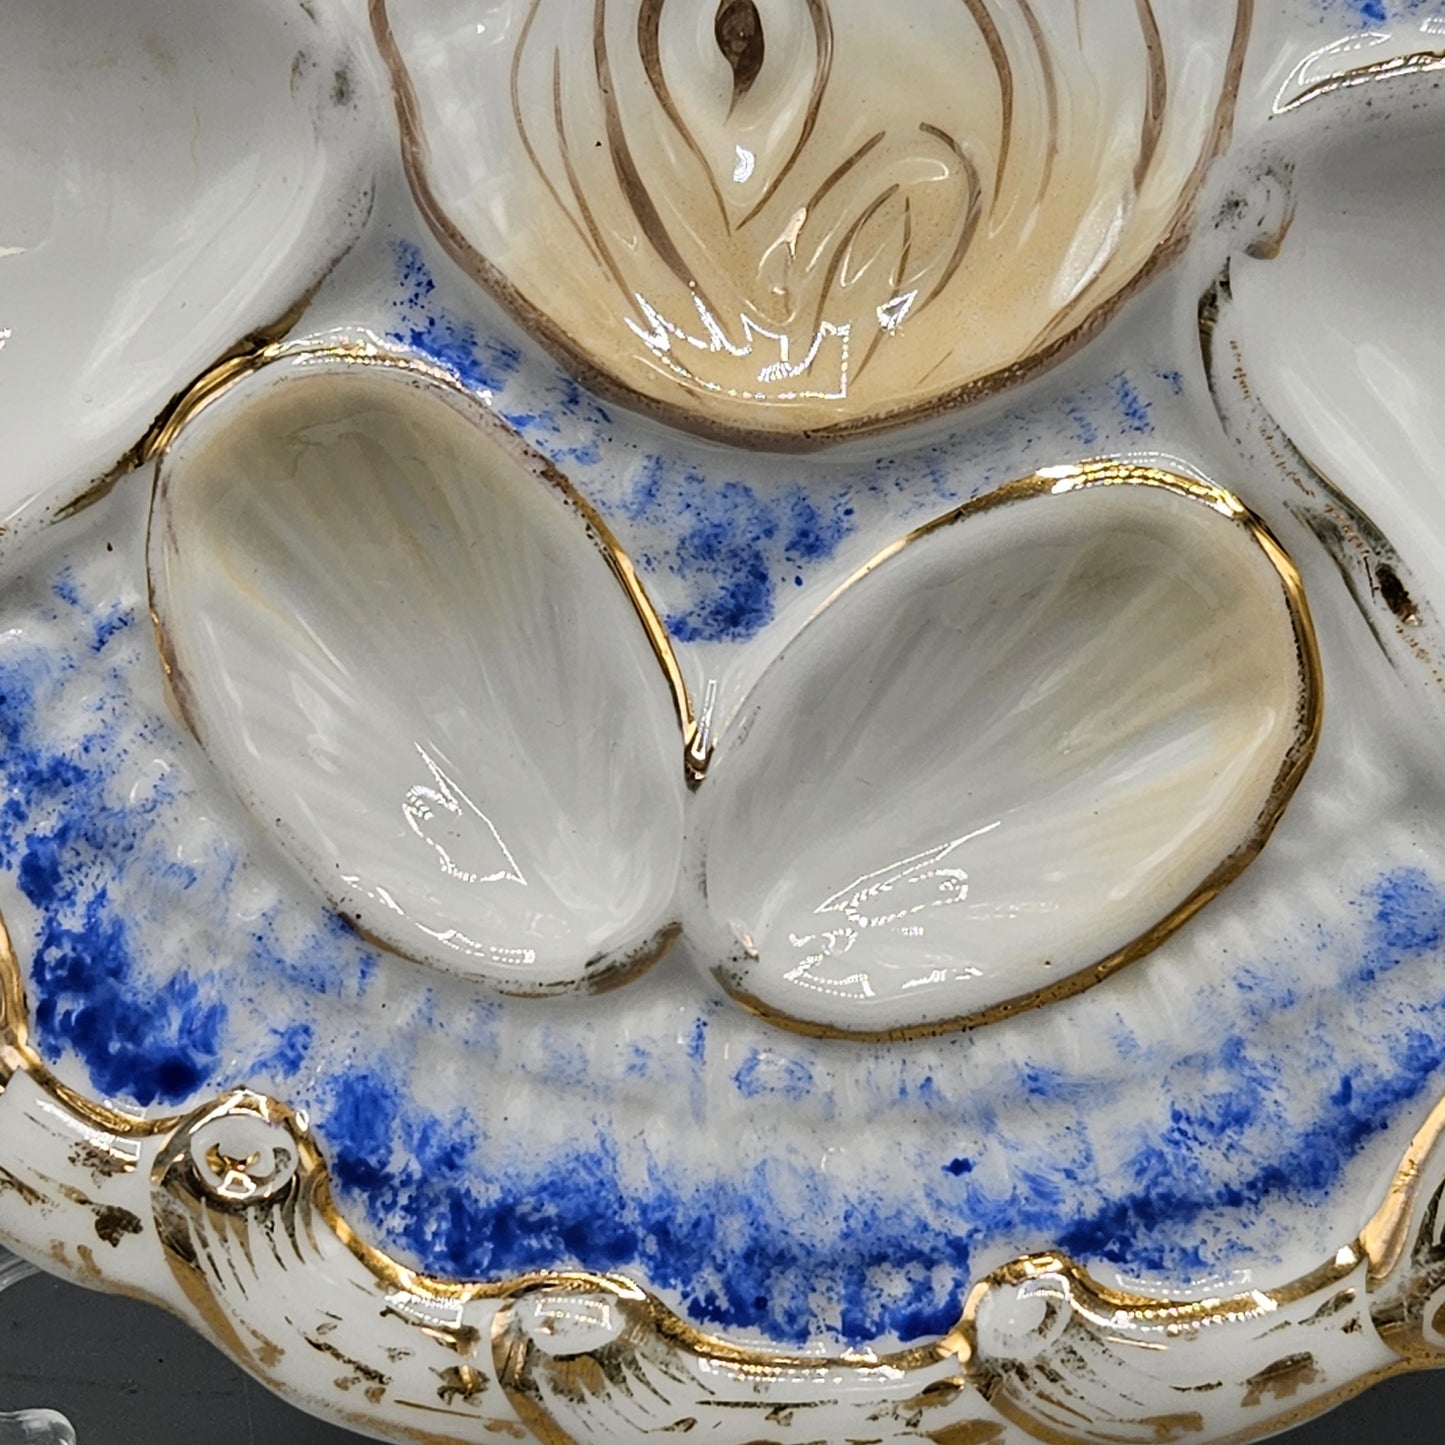 CT Altwasser German Porcelain Oyster Plate - Cobalt Blue & Pink